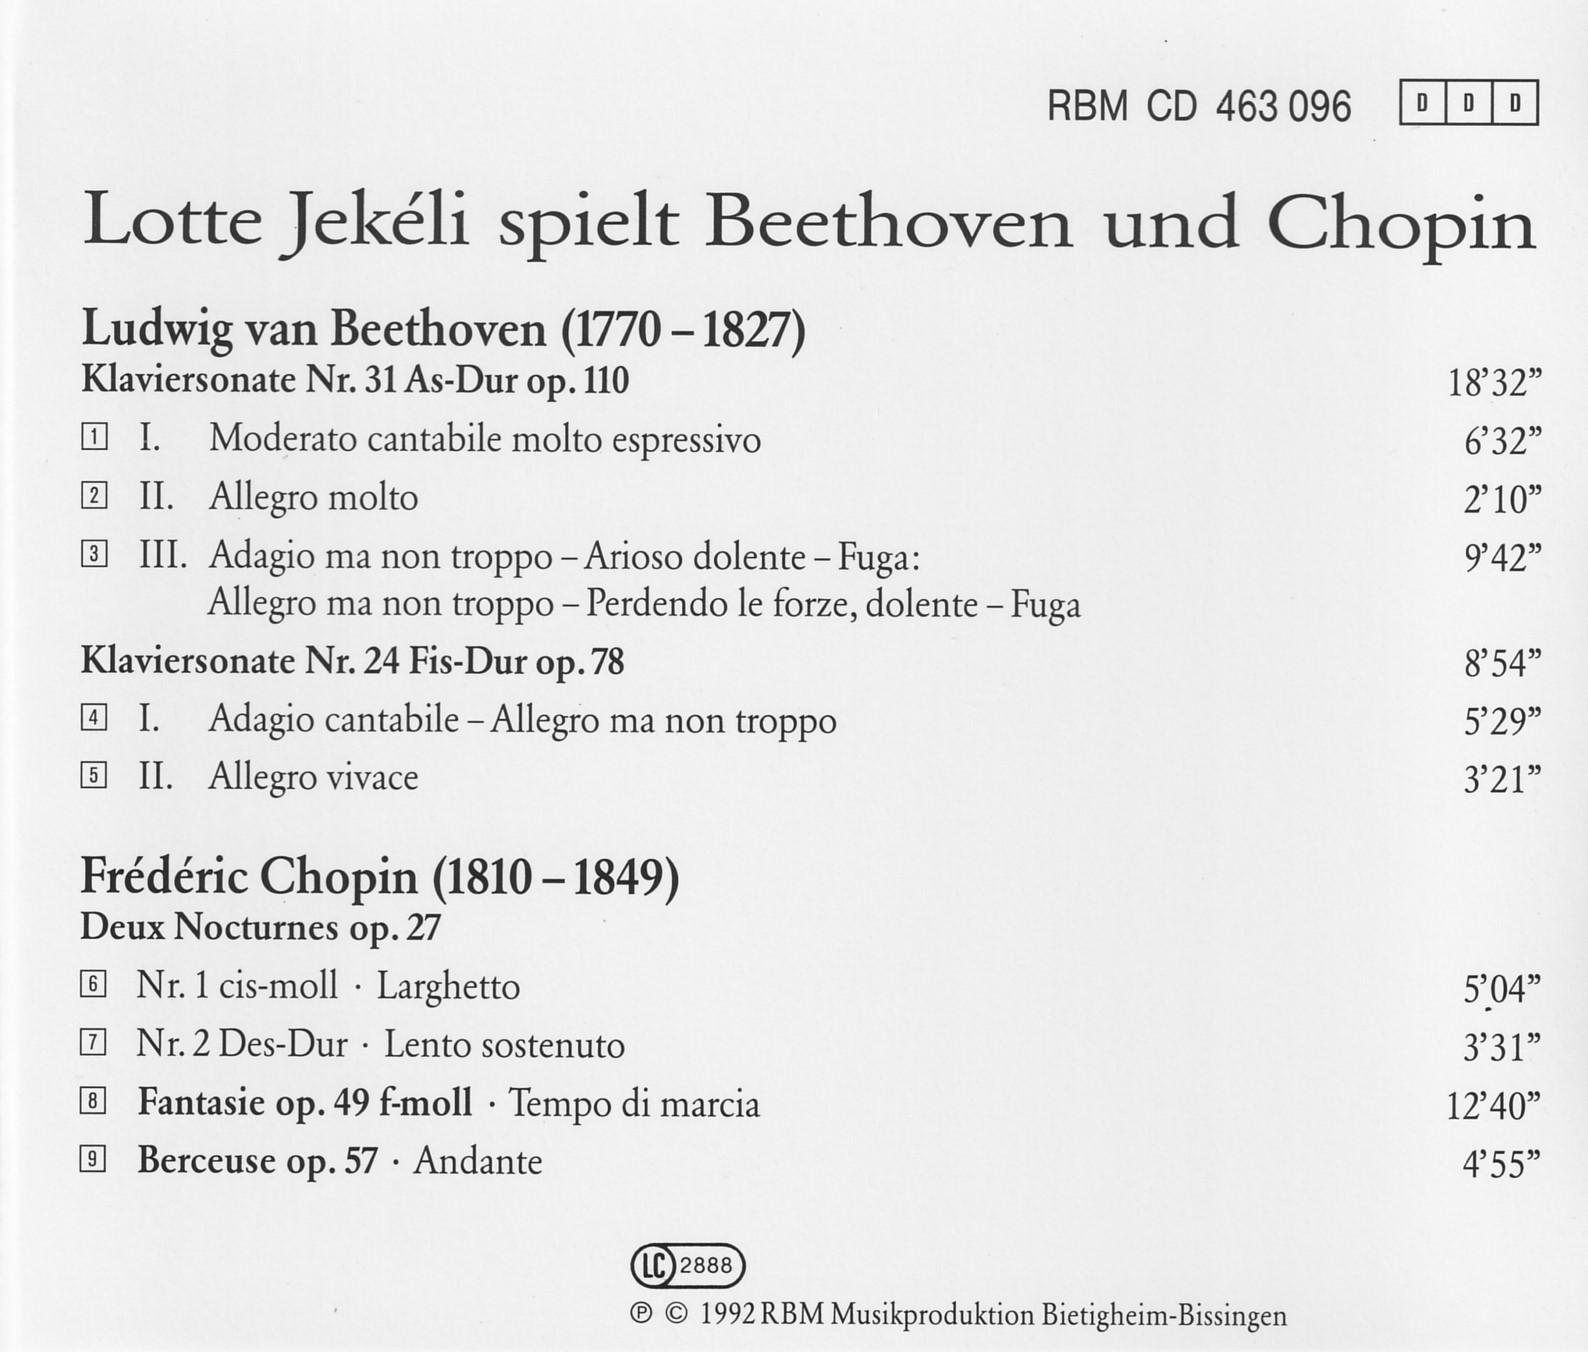 Lotte Jekéli spielt Beethoven und Chopin